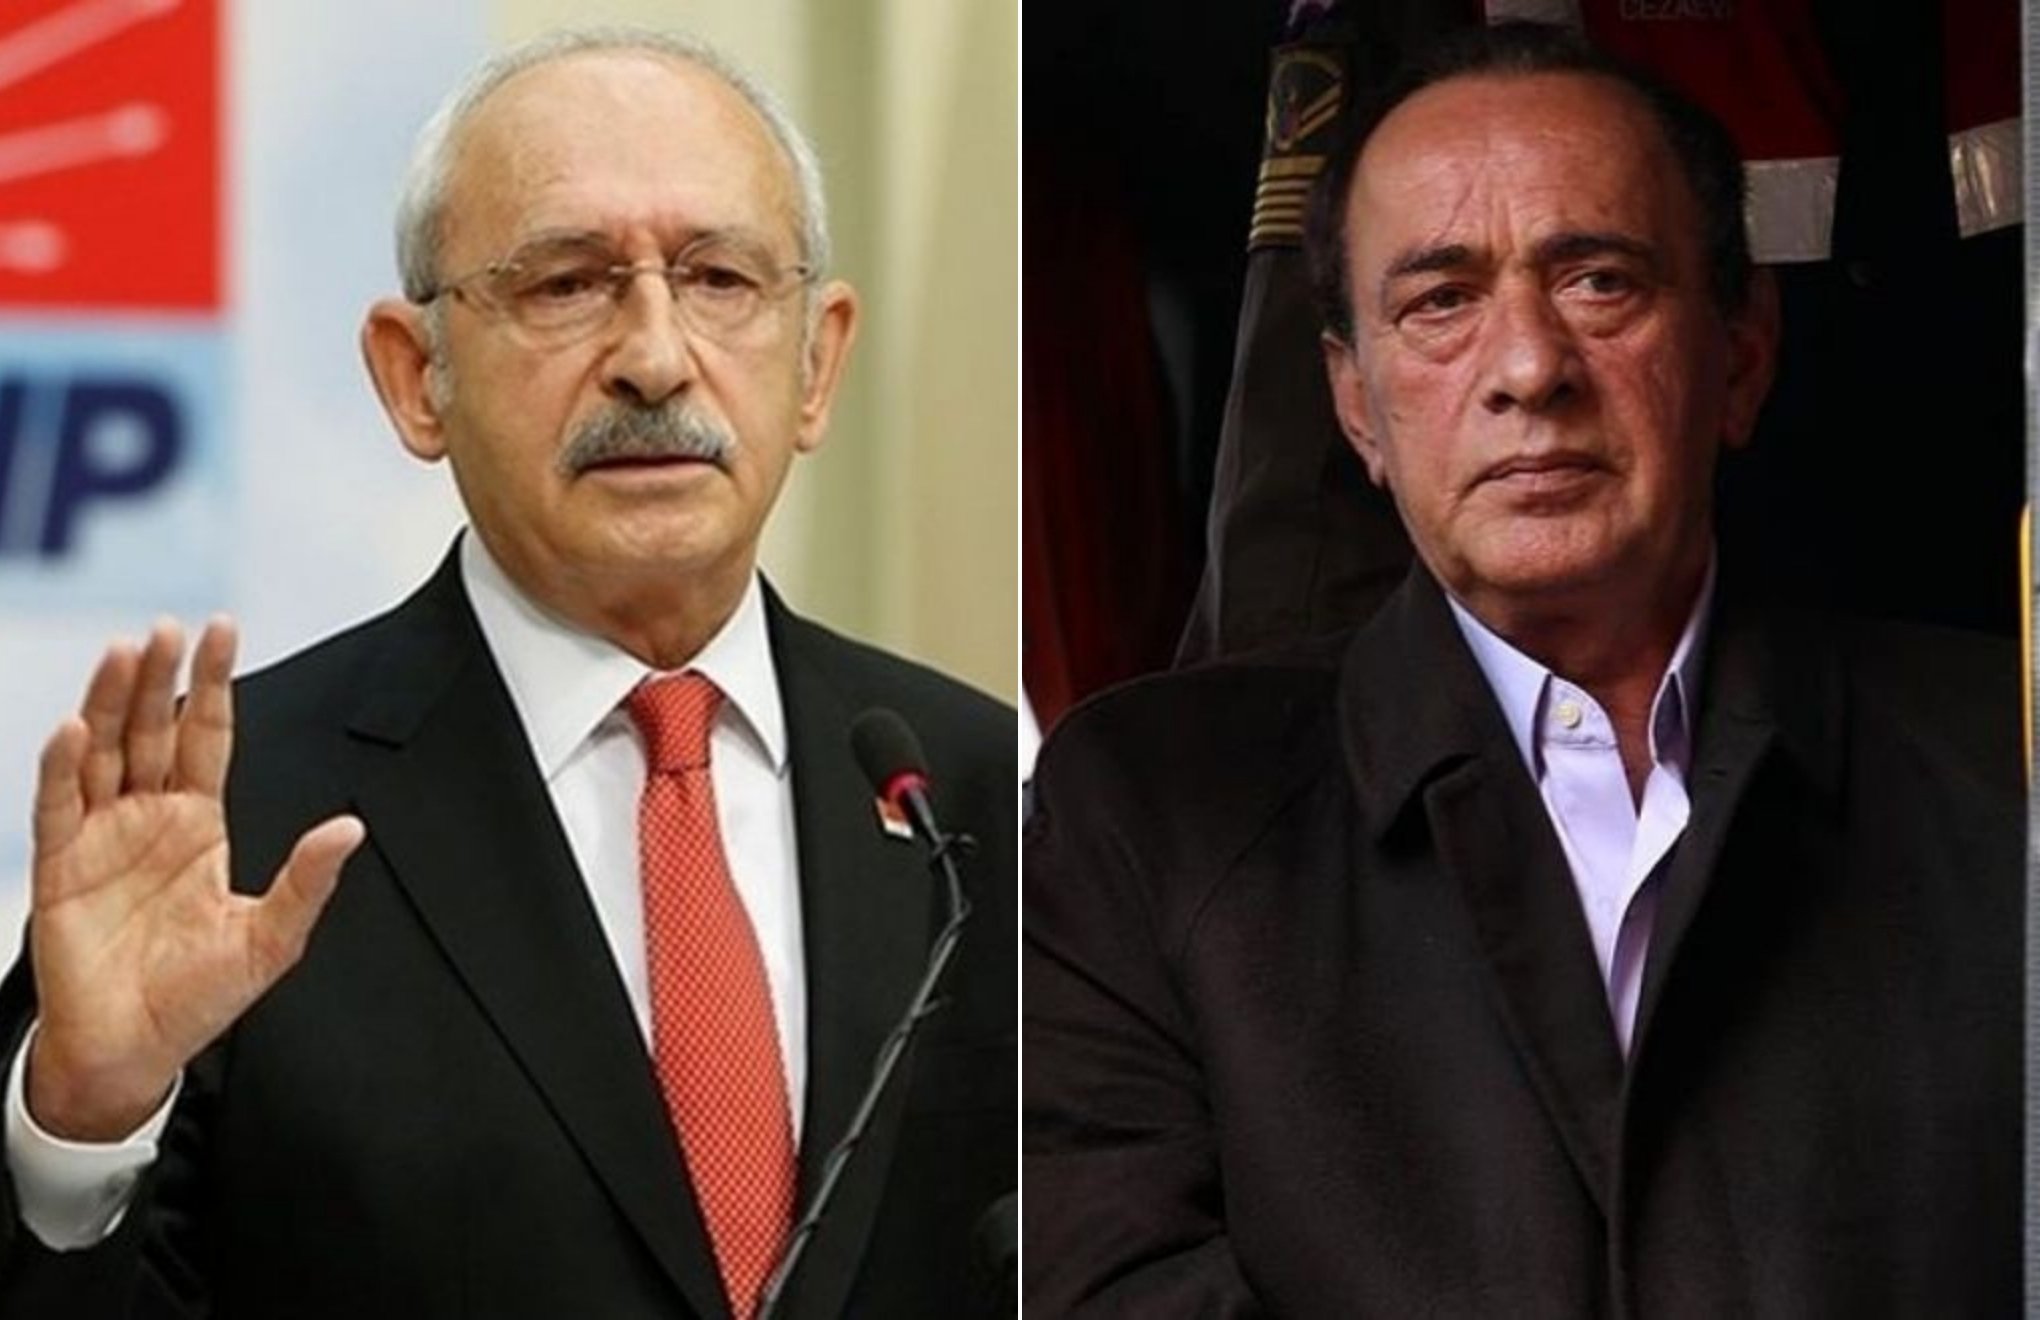 Alaattin Çakıcı sentenced to prison for threatening main opposition leader Kılıçdaroğlu